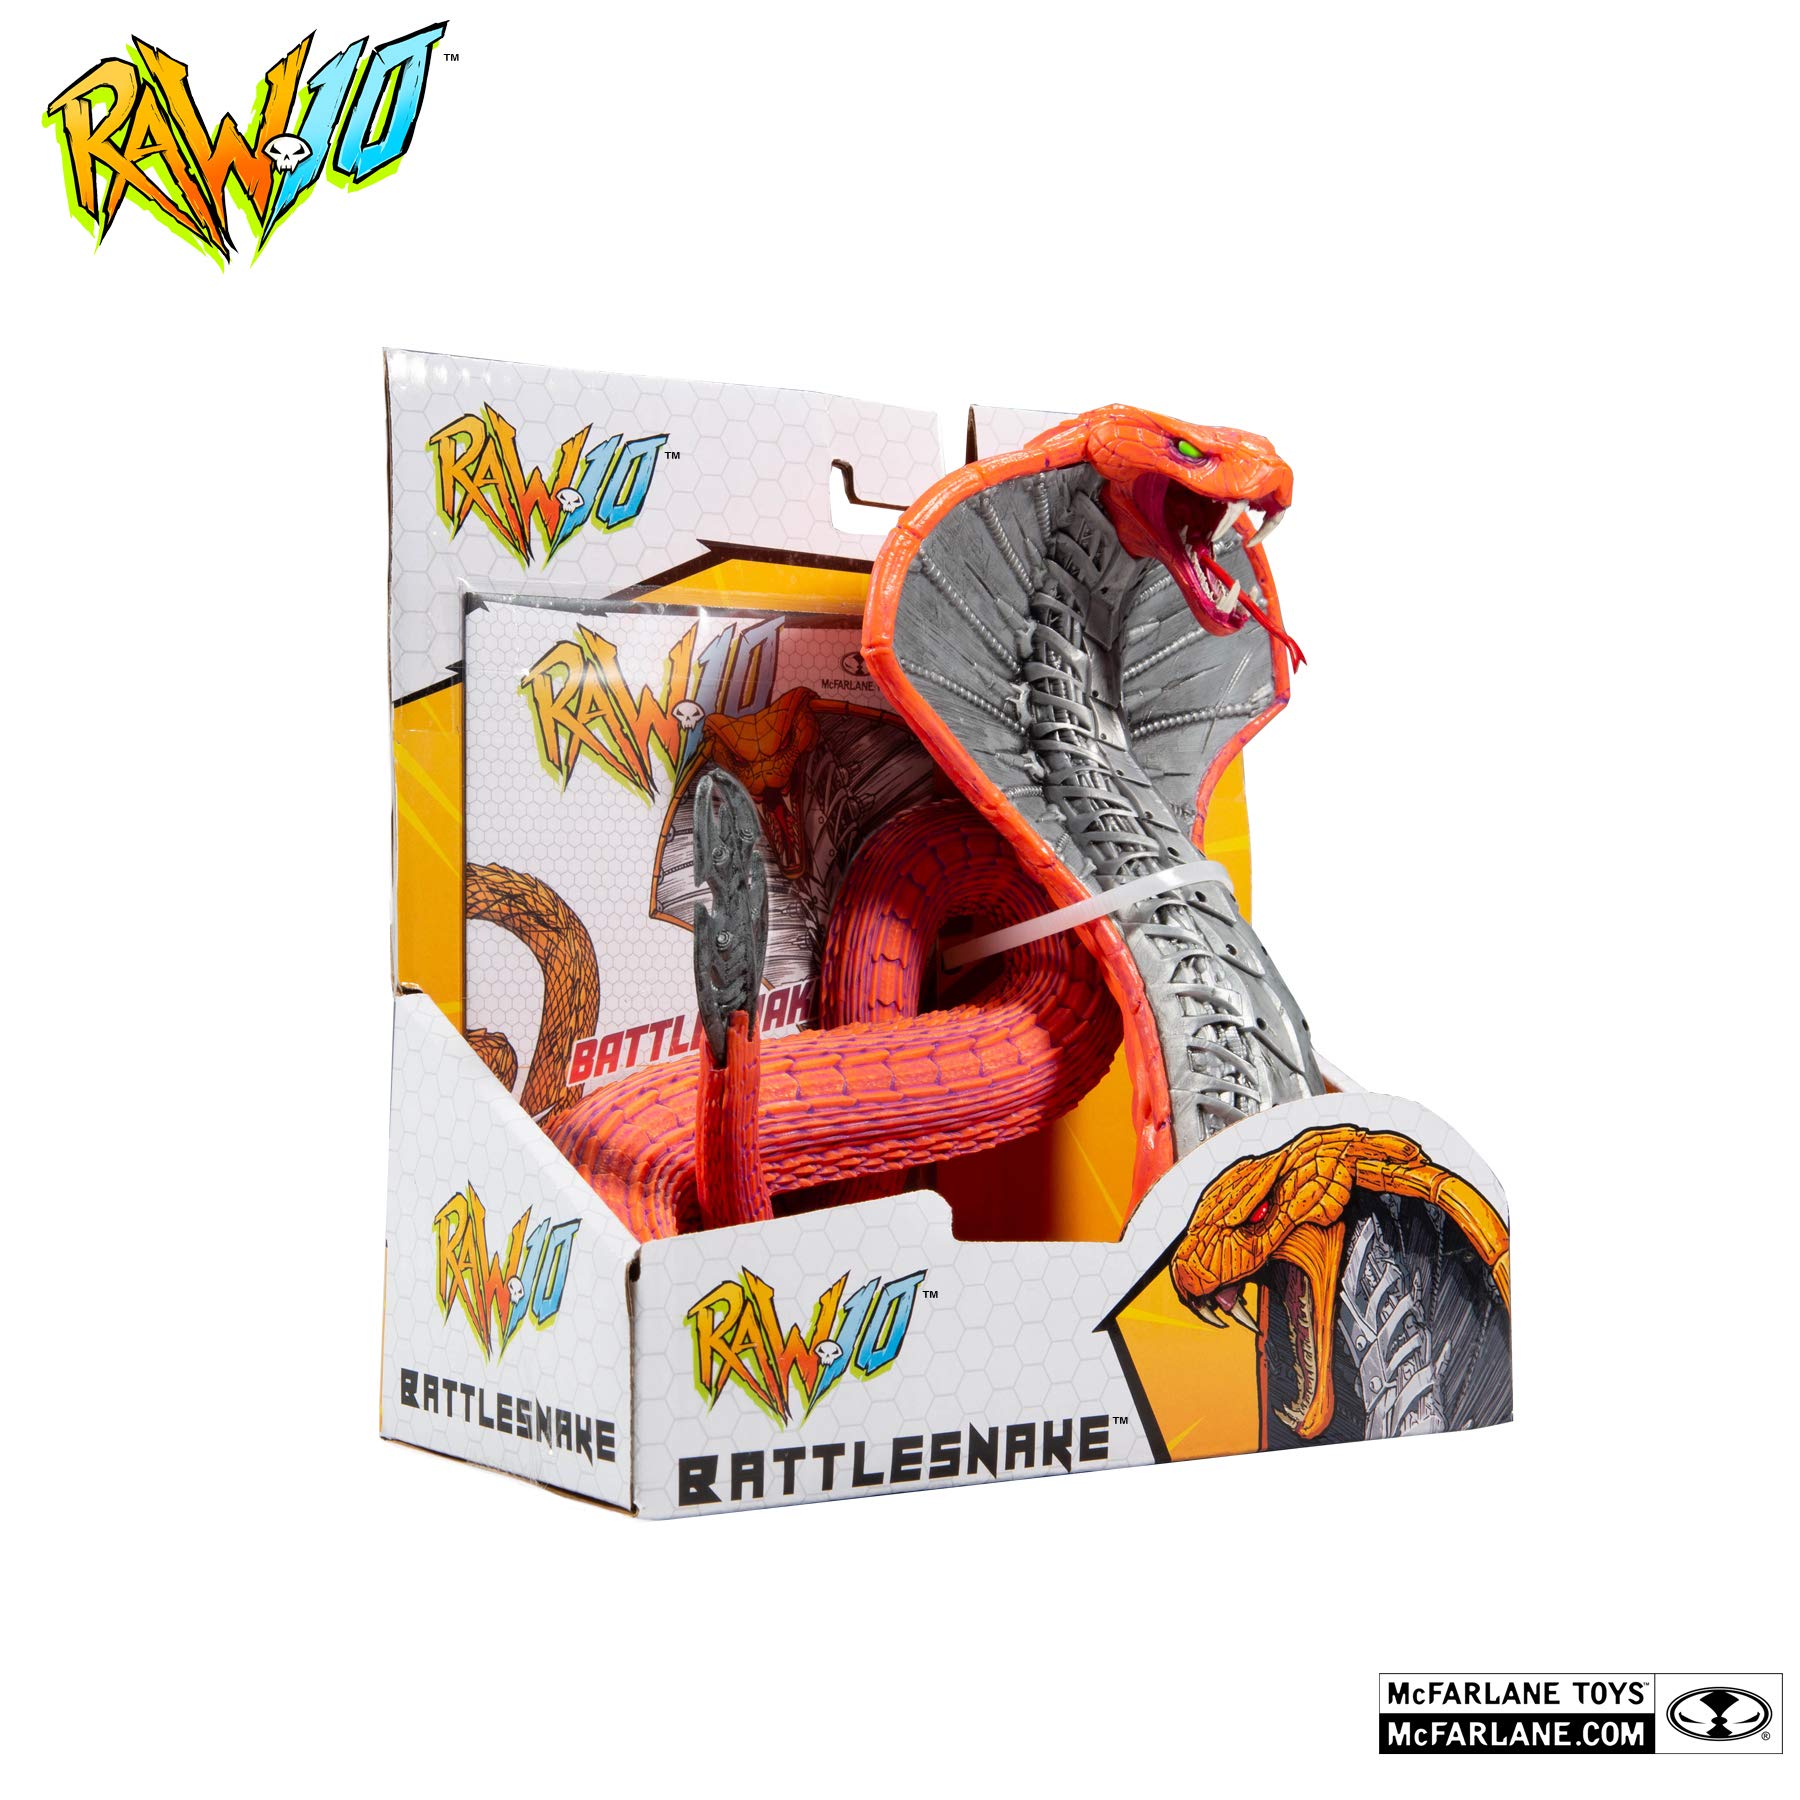 McFarlane Toys RAW10 Series Battlesnake